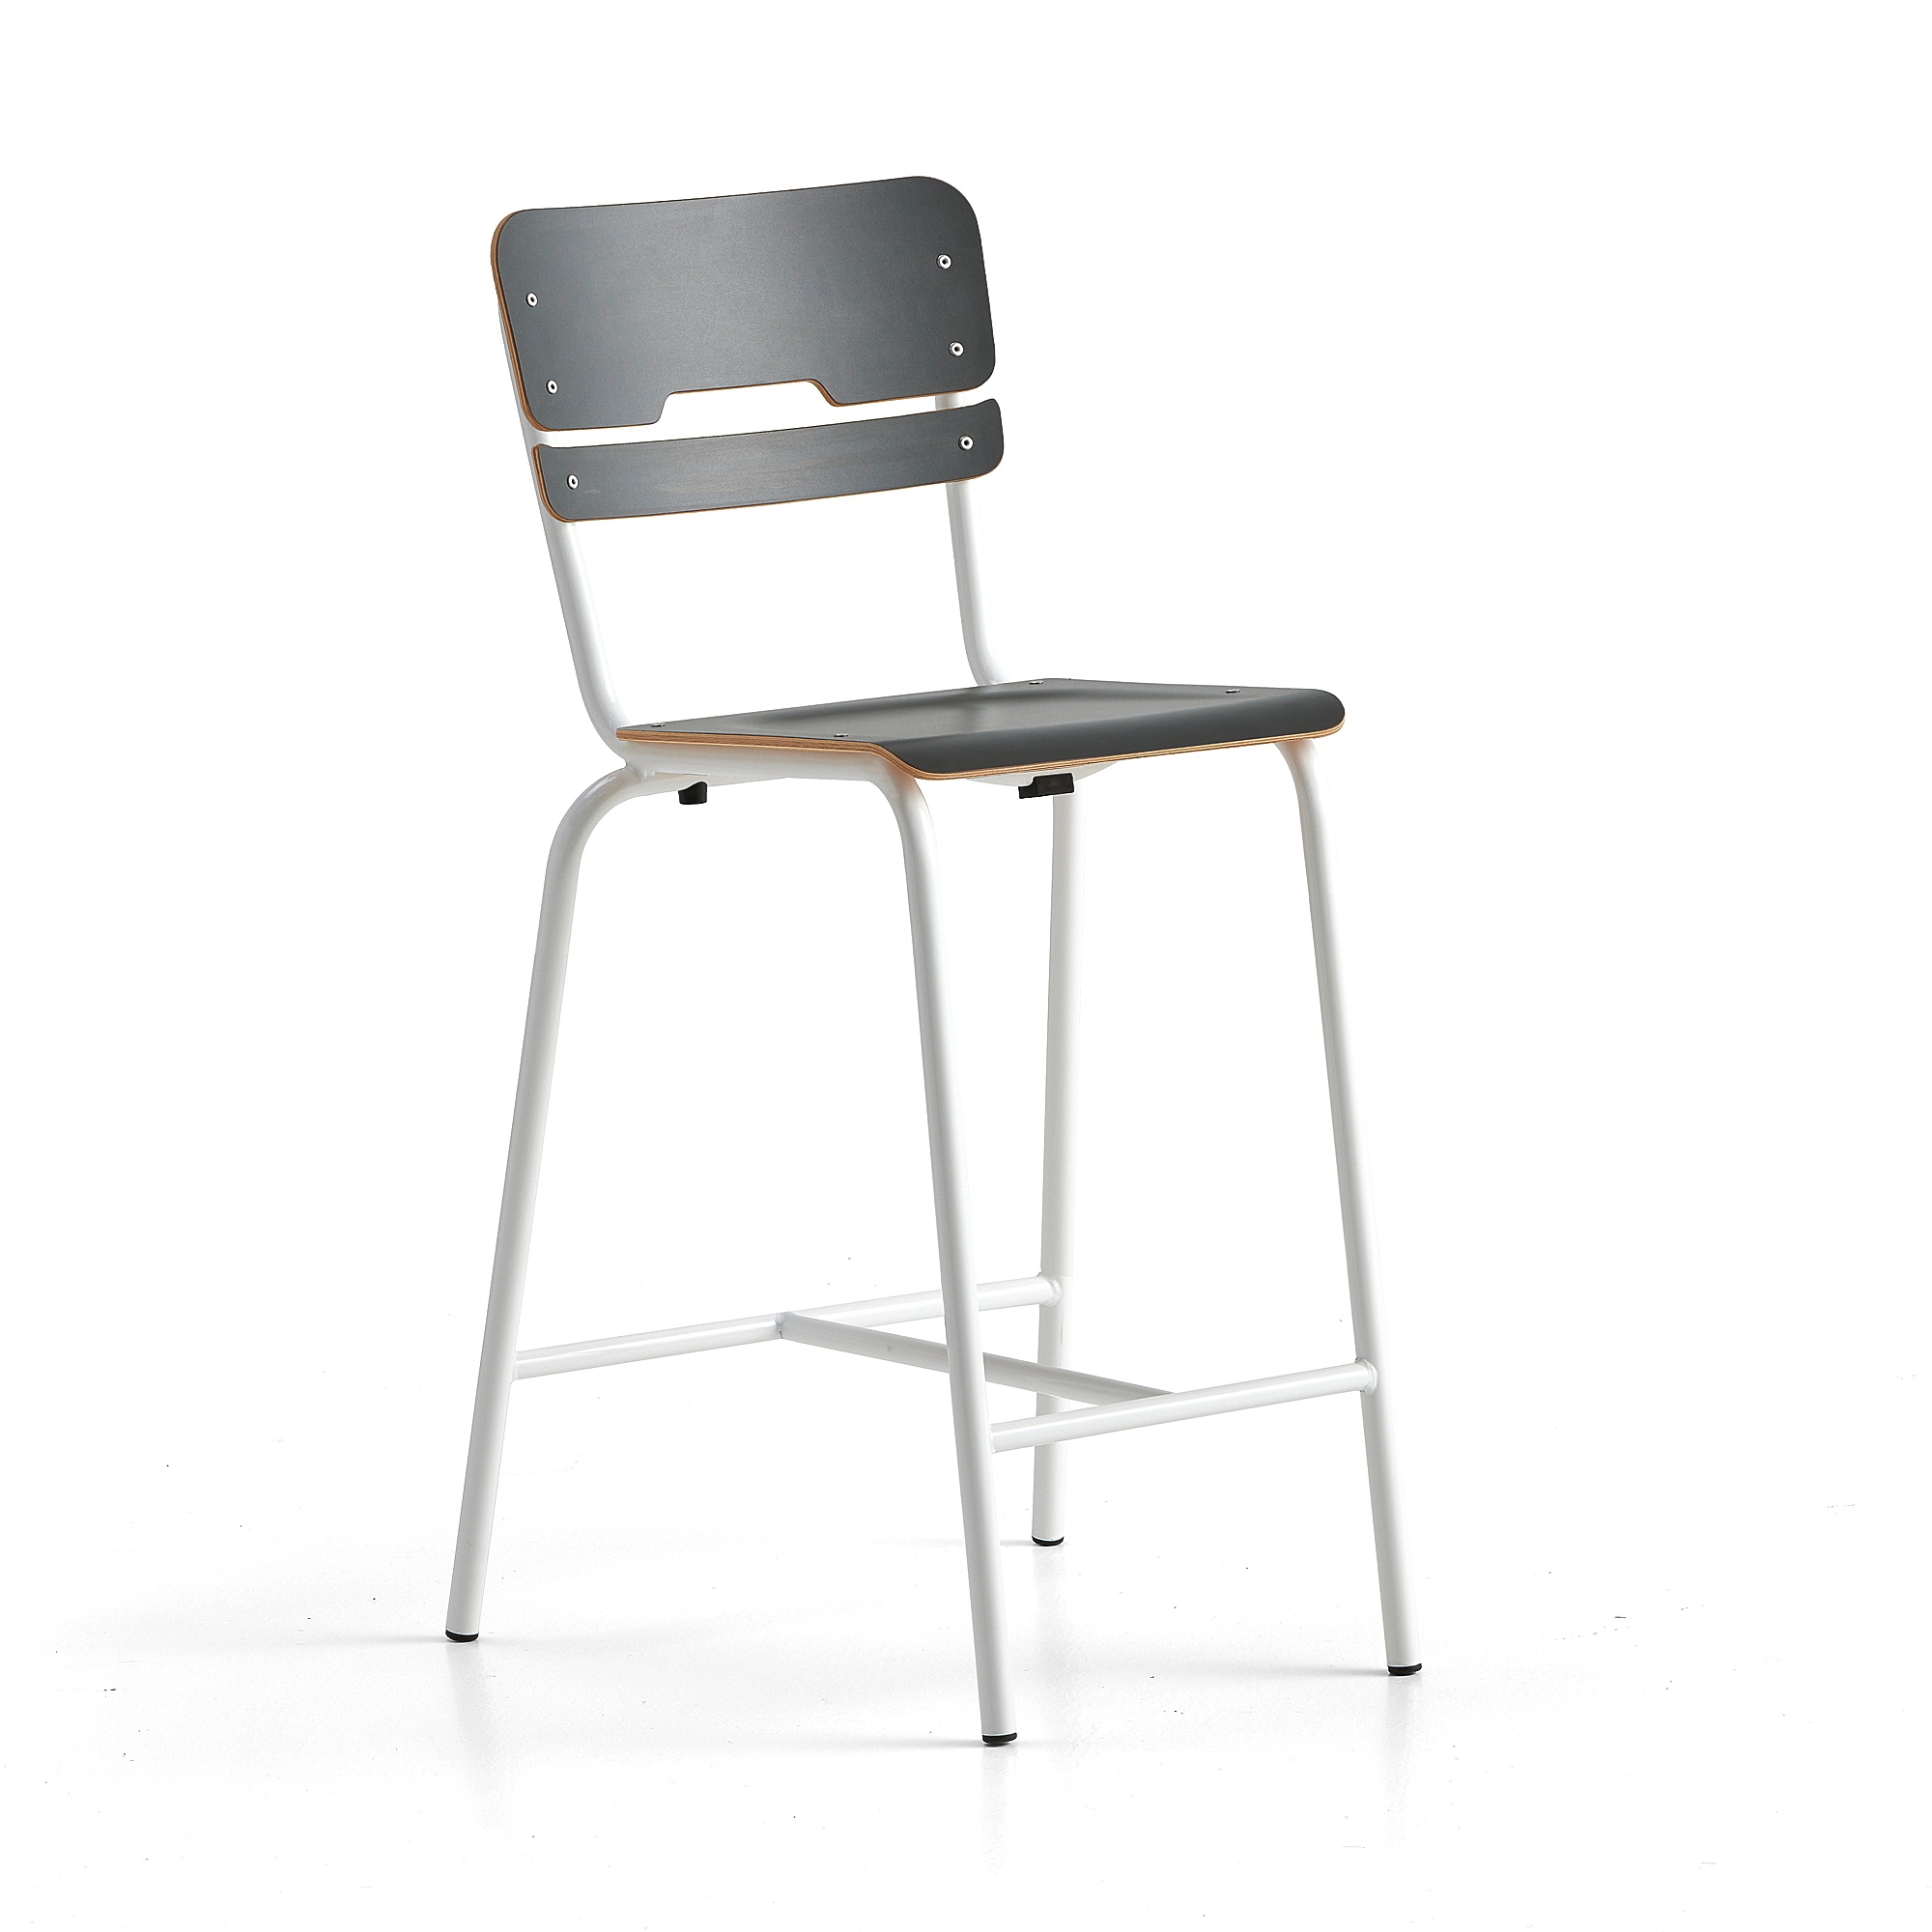 Školní židle SCIENTIA, sedák 360x360 mm, výška 650 mm, bílá/antracitová